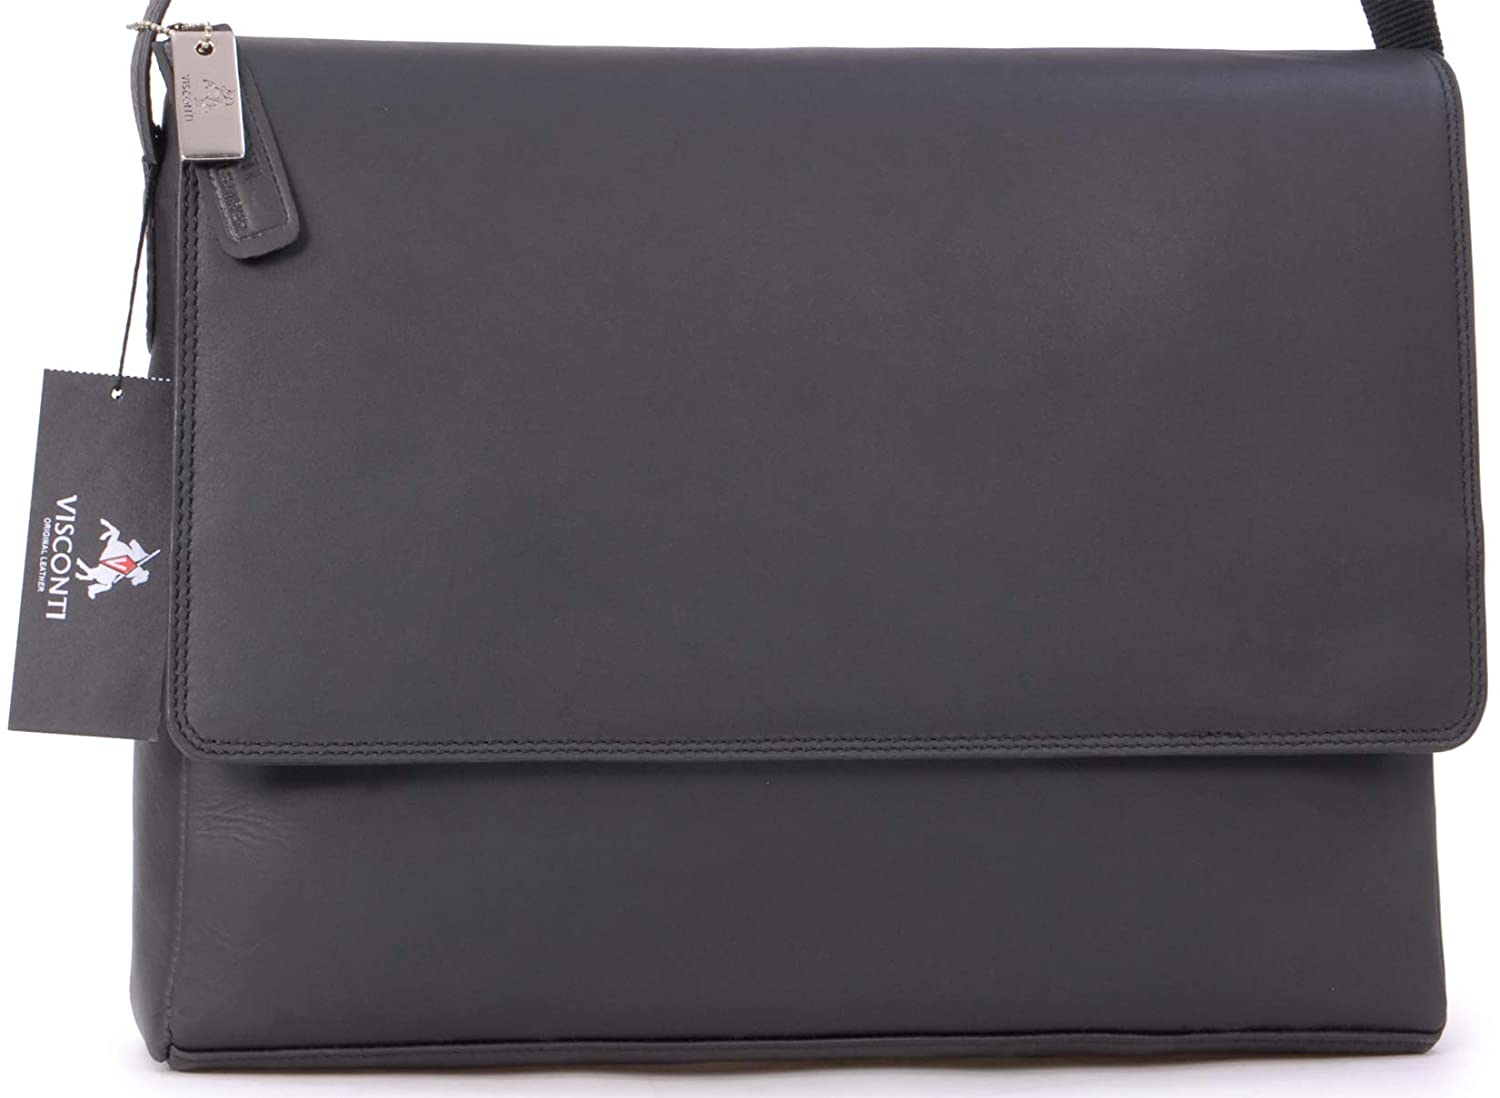 Laptop Messenger Shoulder Bag L 18516 Office Work Organiser Bag TEXAS - Oil Tan Hunter Leather VISCONTI Multiple Pockets 15 Inch Laptop Bag